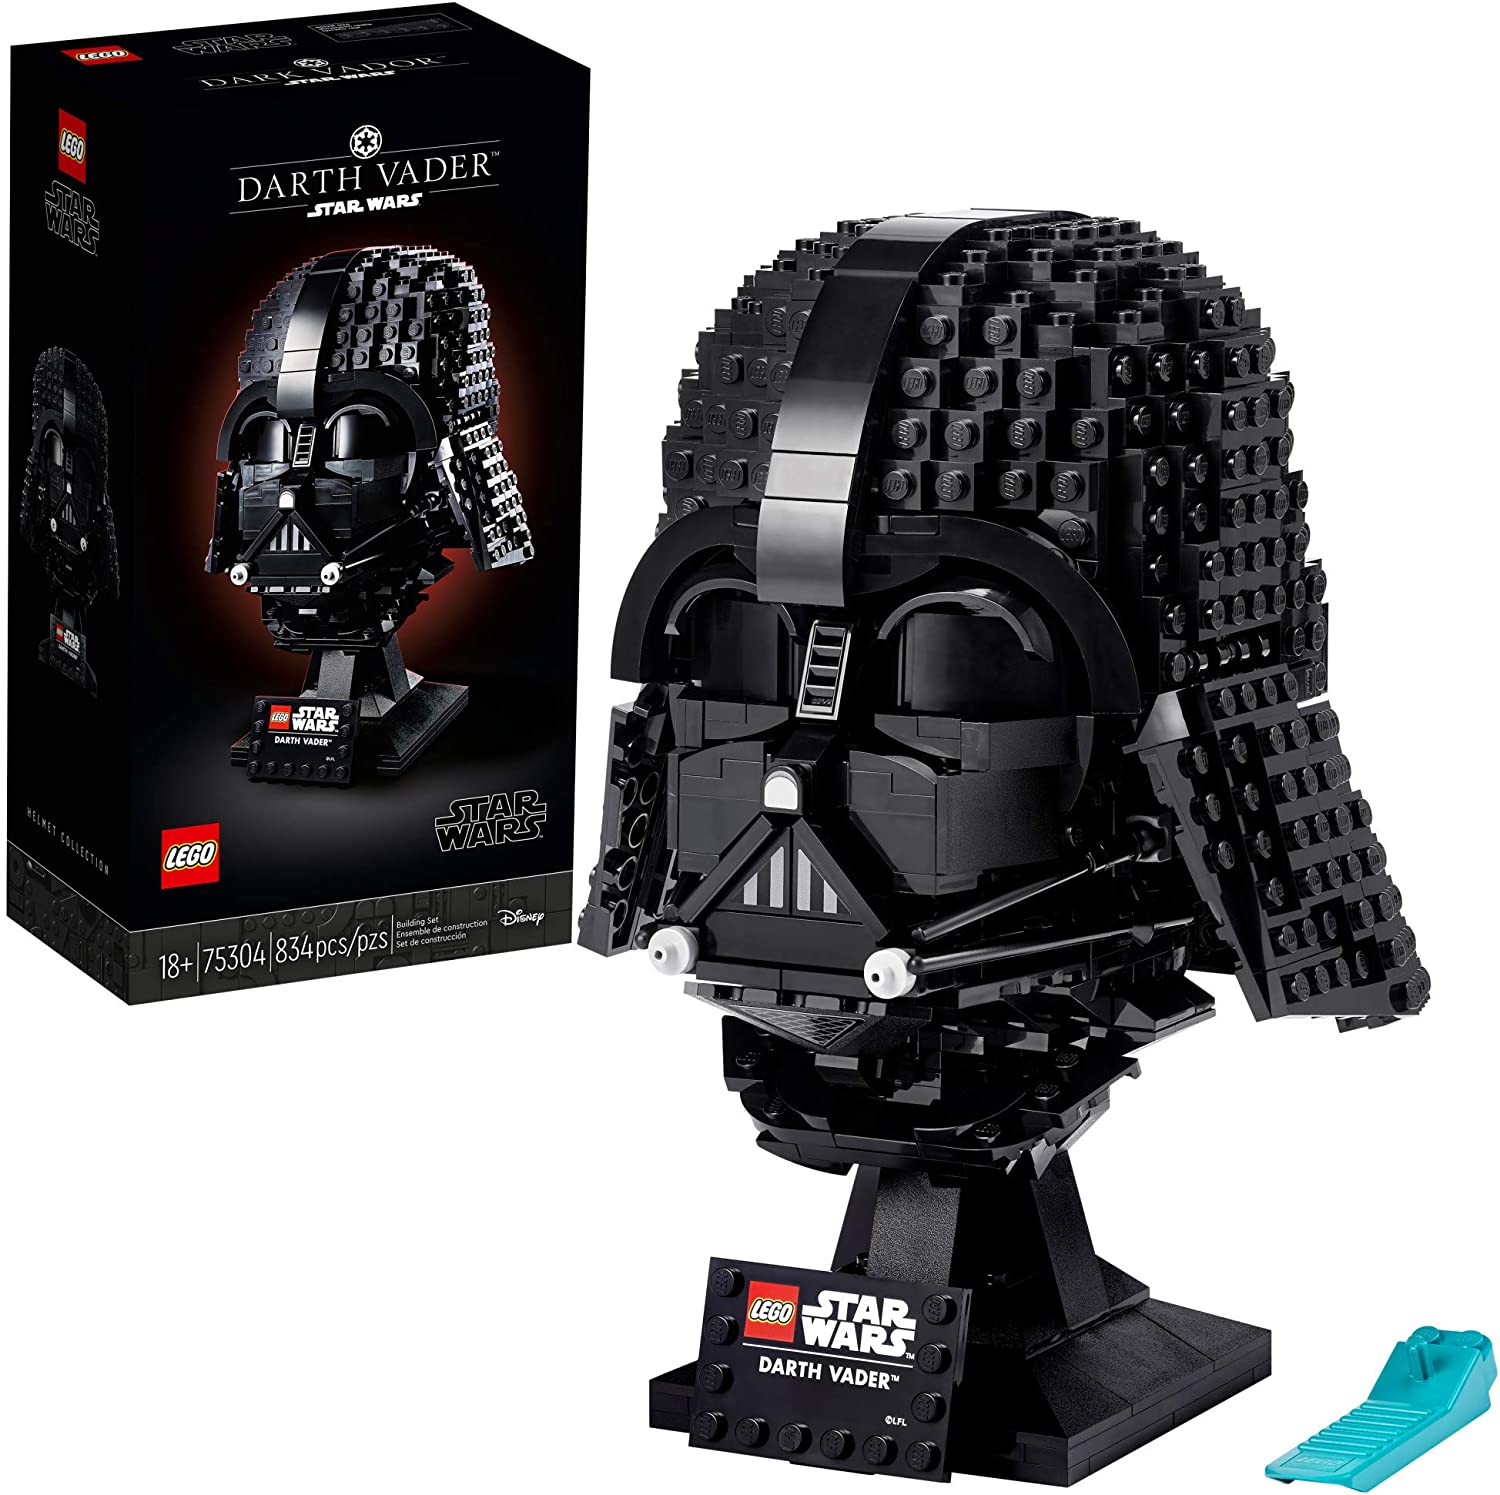 Darth Vader LEGO set. 